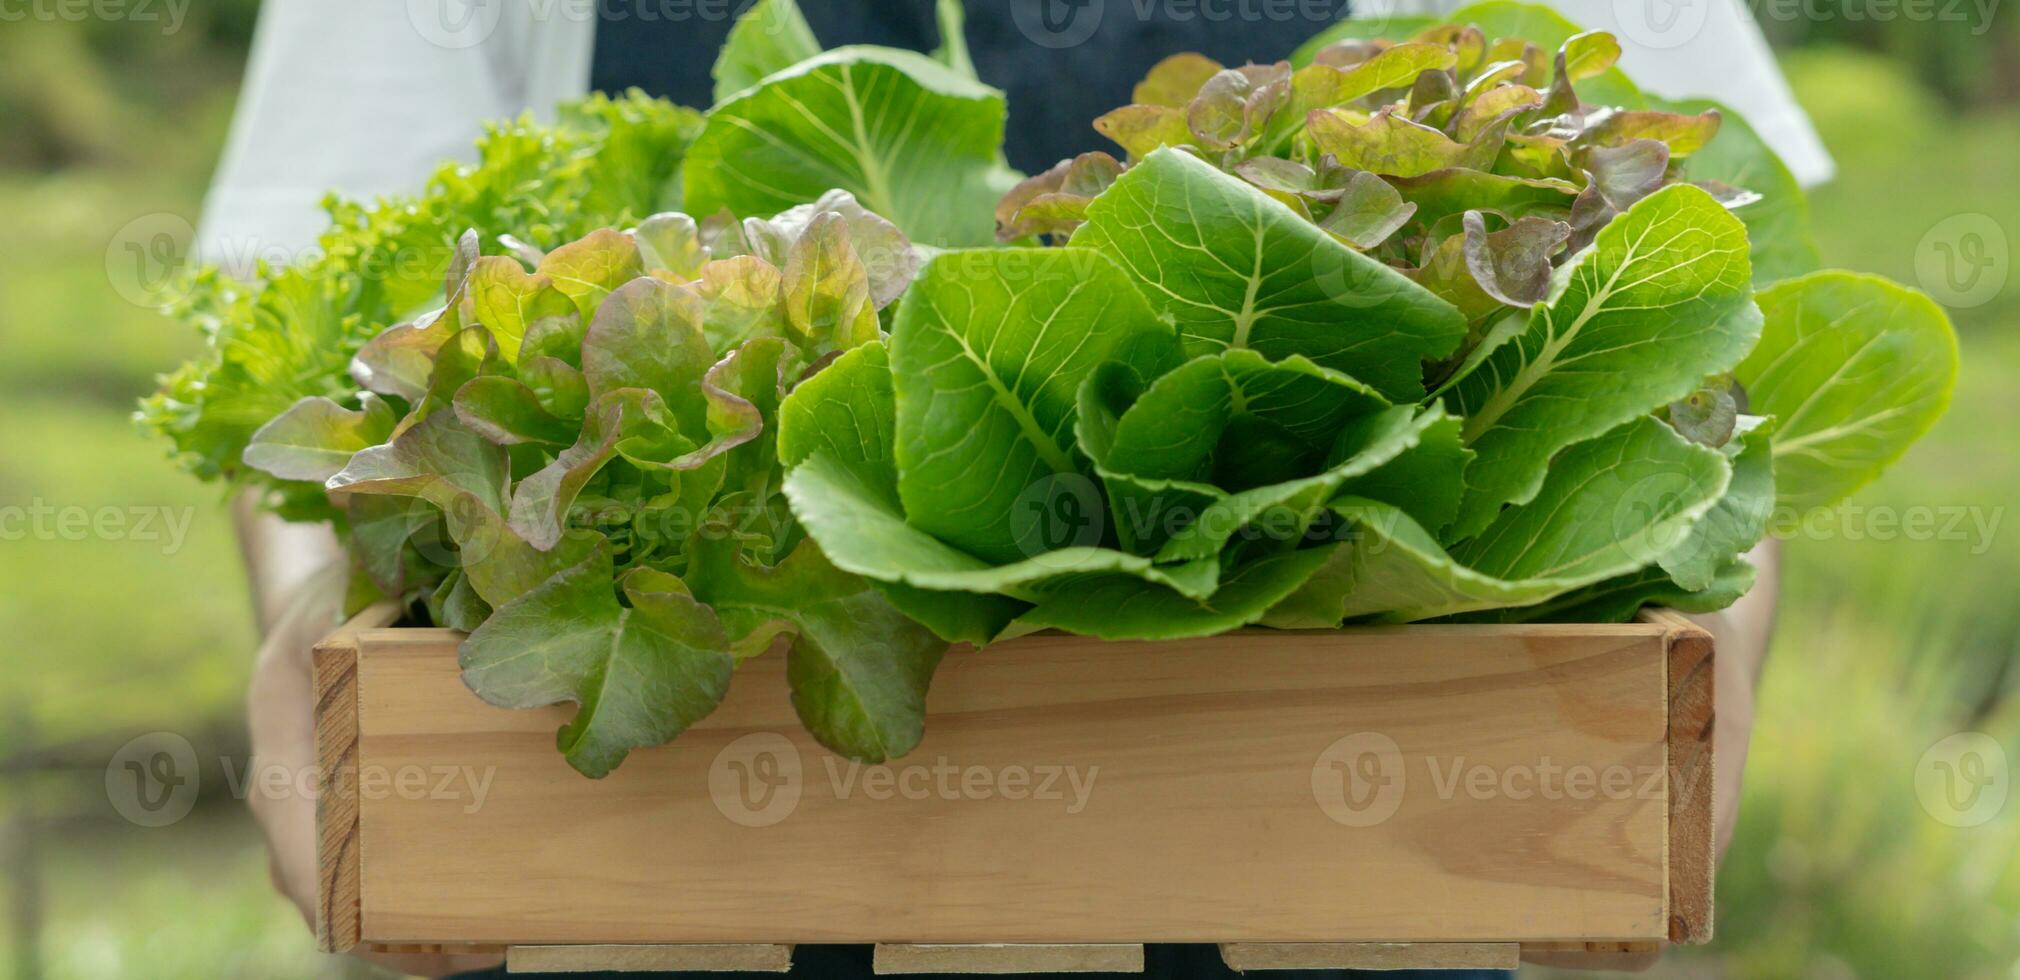 biologico agricoltura, insalata azienda agricola. agricoltori raccogliere insalata verdure in di legno scatole nel piovoso. idroponica verdura crescere naturalmente. serra giardino, ecologico biologico, sano, vegetariano, ecologia foto